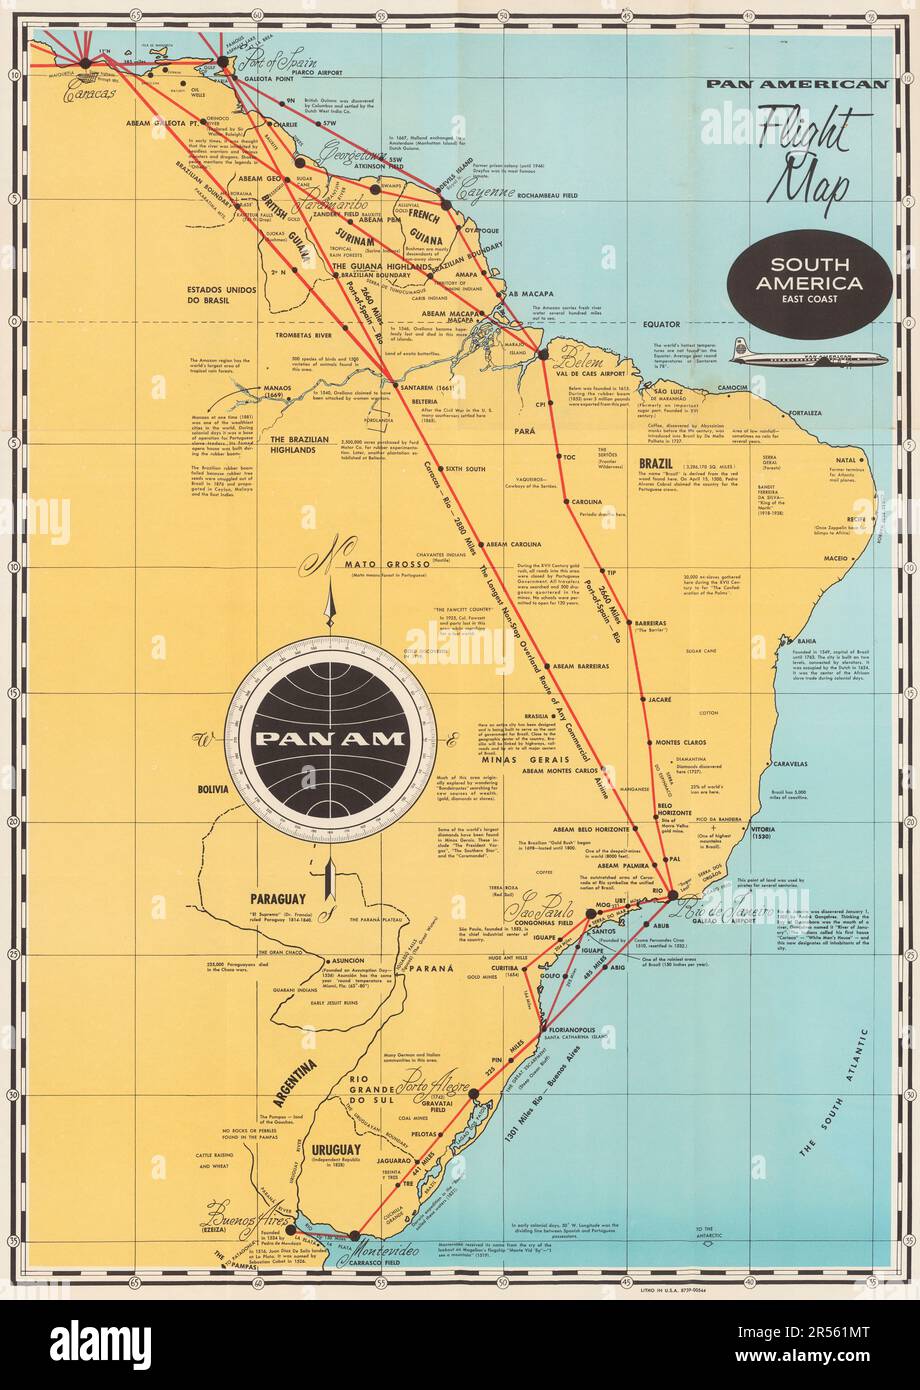 Vintage Travel Poster - Pan American World Airways - eine amerikanische Flugkarte - Südamerikanische Ostküste. Stockfoto